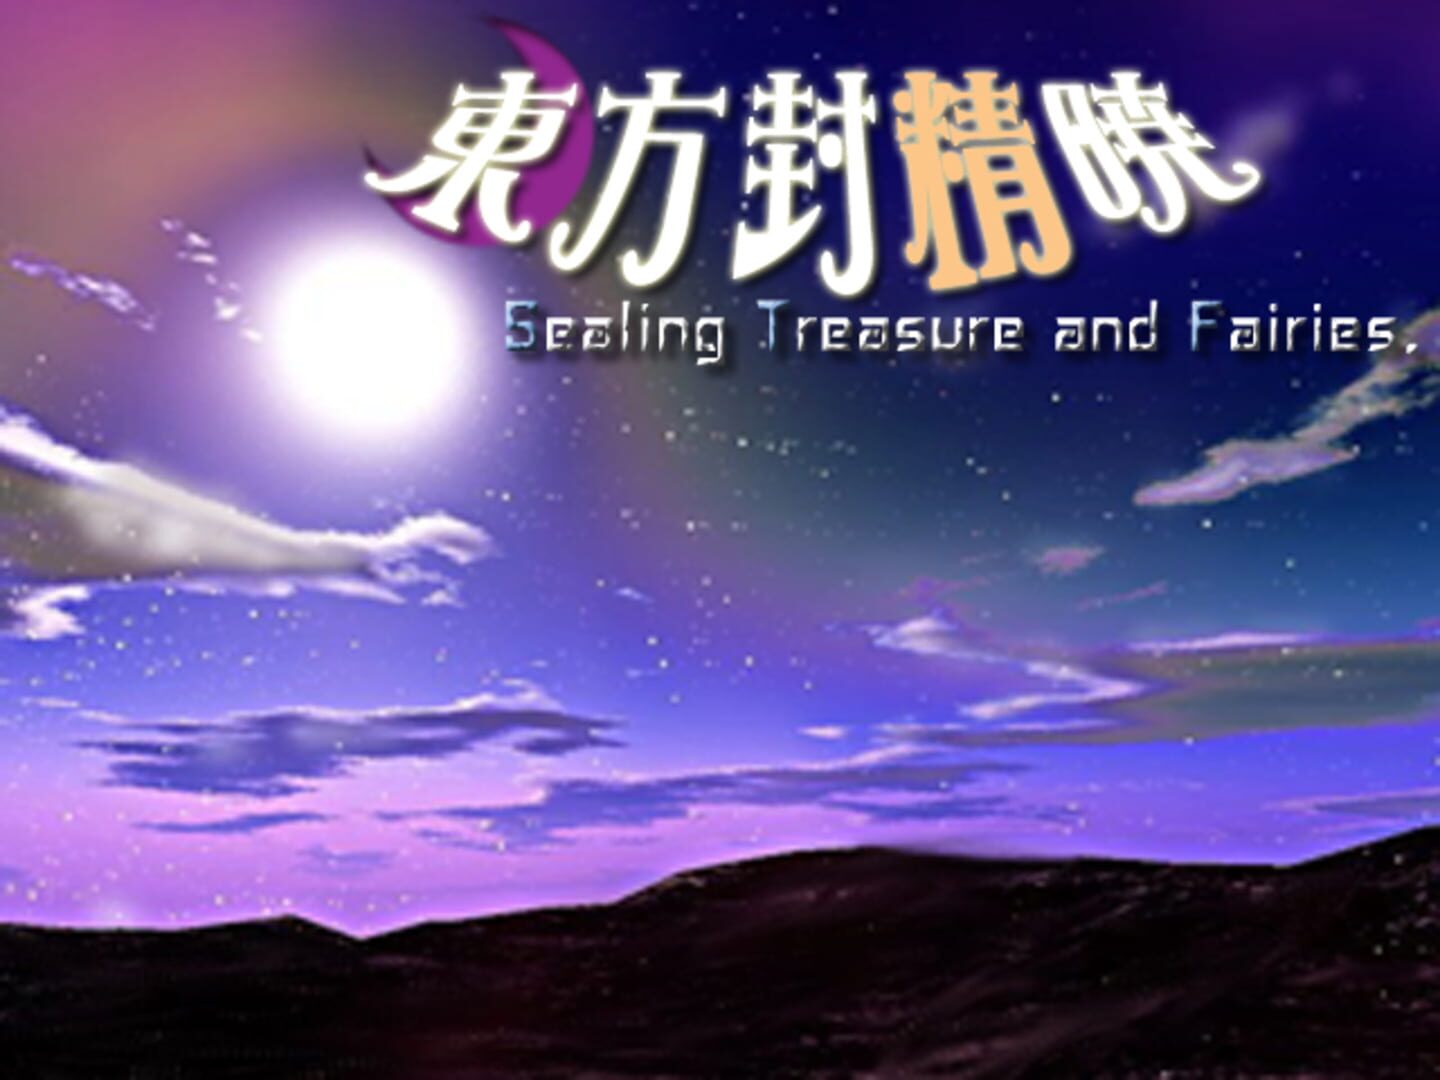 Touhou Fuuseigyou: Sealing Treasure and Fairies